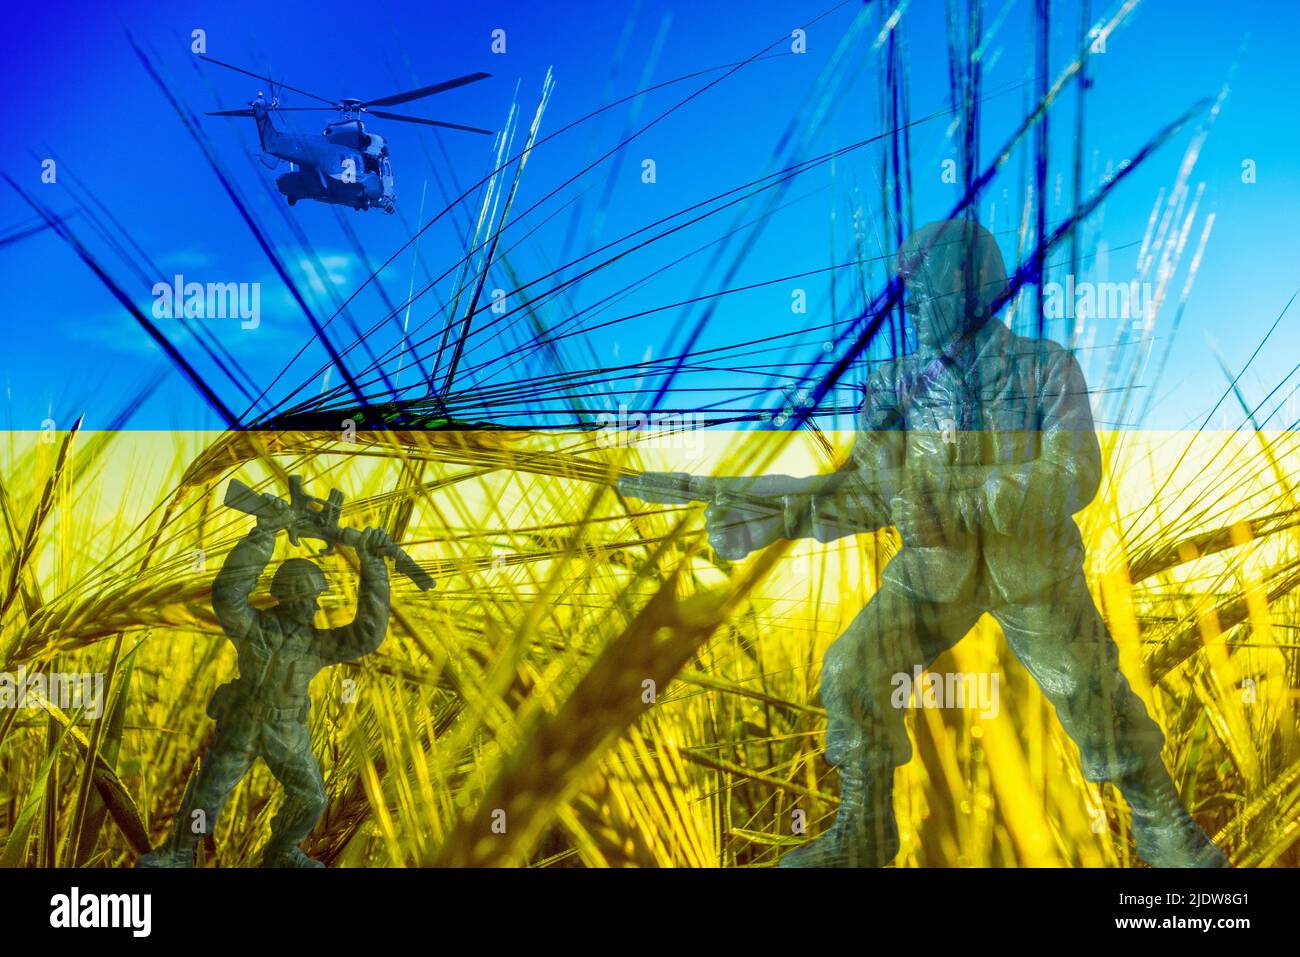 Flagge der Ukraine Weizenfeld, Soldaten, Composite. Konzeptbild: Ukraine Russland-Konflikt, Krieg, Weizen, Weltnahrungsmangel, russische Sanktionen... Stockfoto